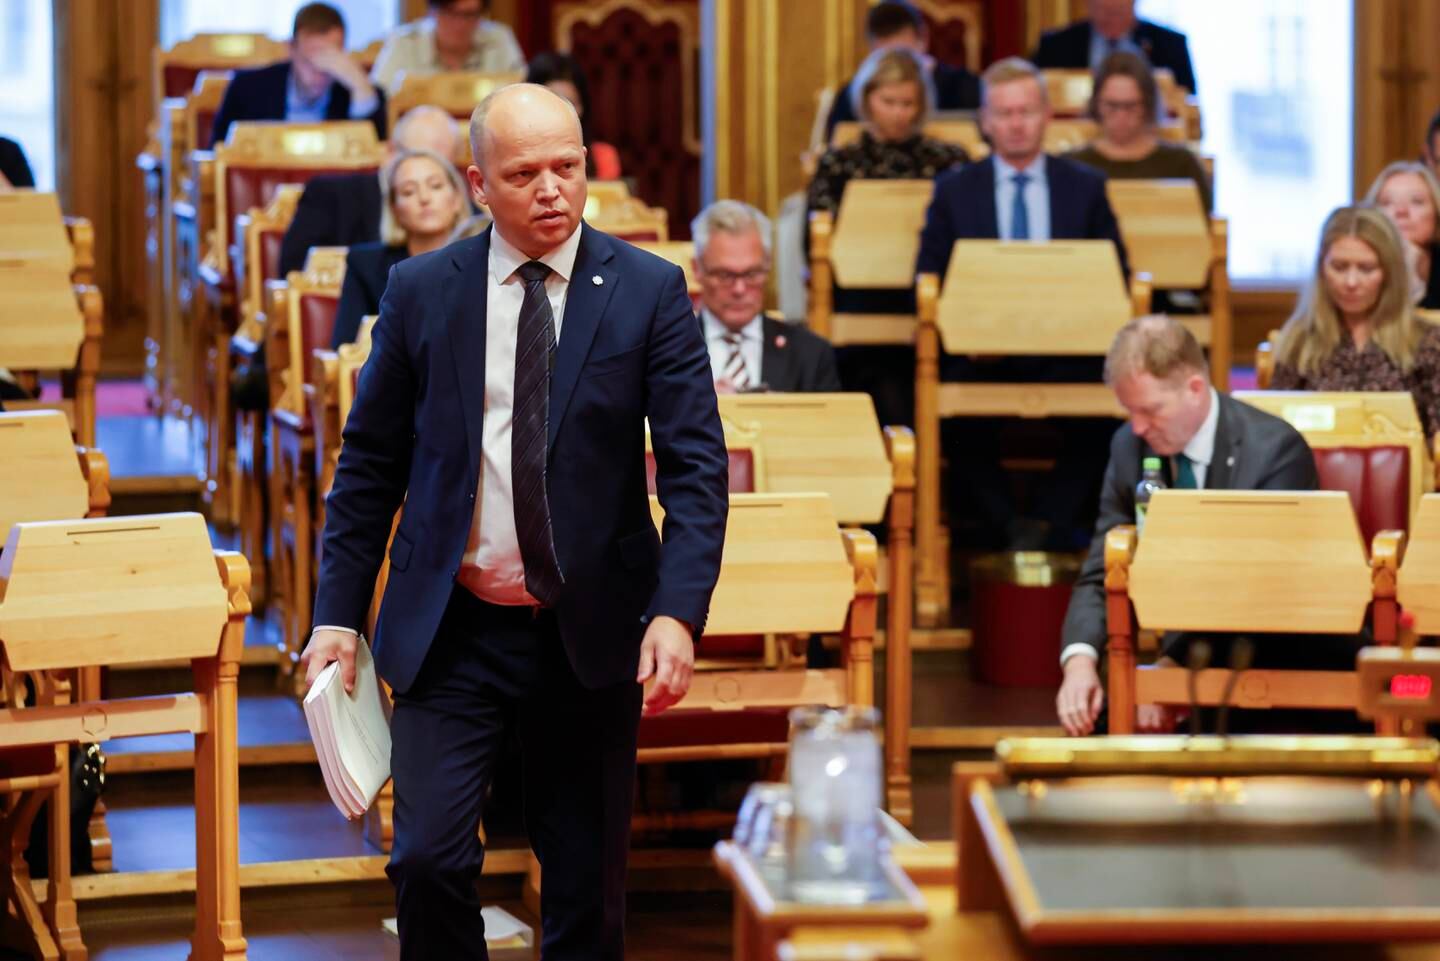 Finansminister Trygve Slagsvold Vedum (Sp) legger fram Statsbudsjettet på Stortinget, fredag 6. oktober.
Foto: Hanna Johre / NTB